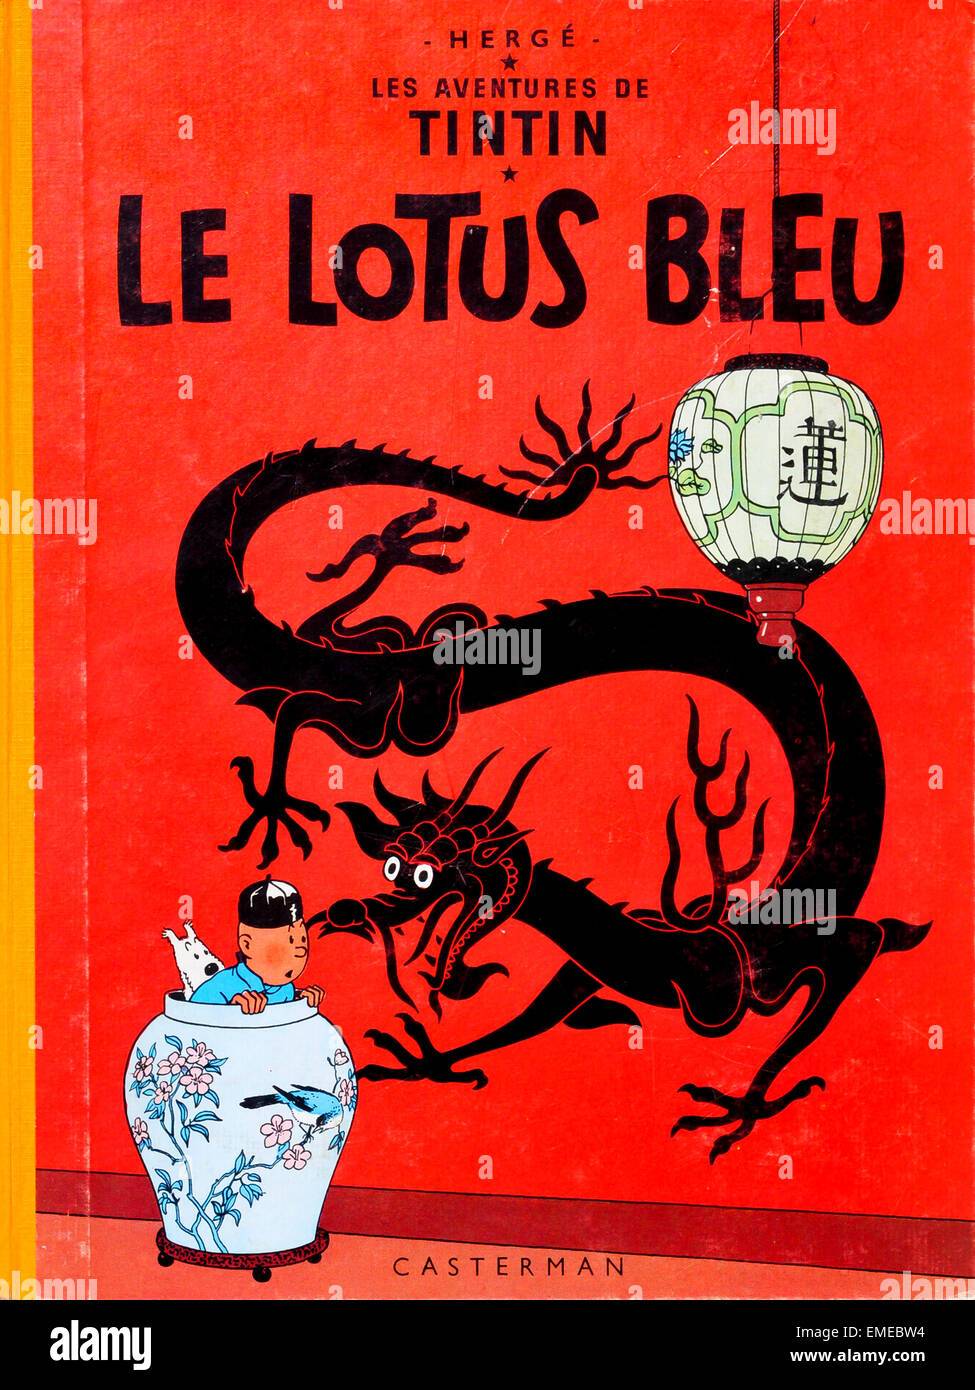 Le Lotus Bleu" 1940/50s vintage Tintin Couverture de livre Photo Stock -  Alamy